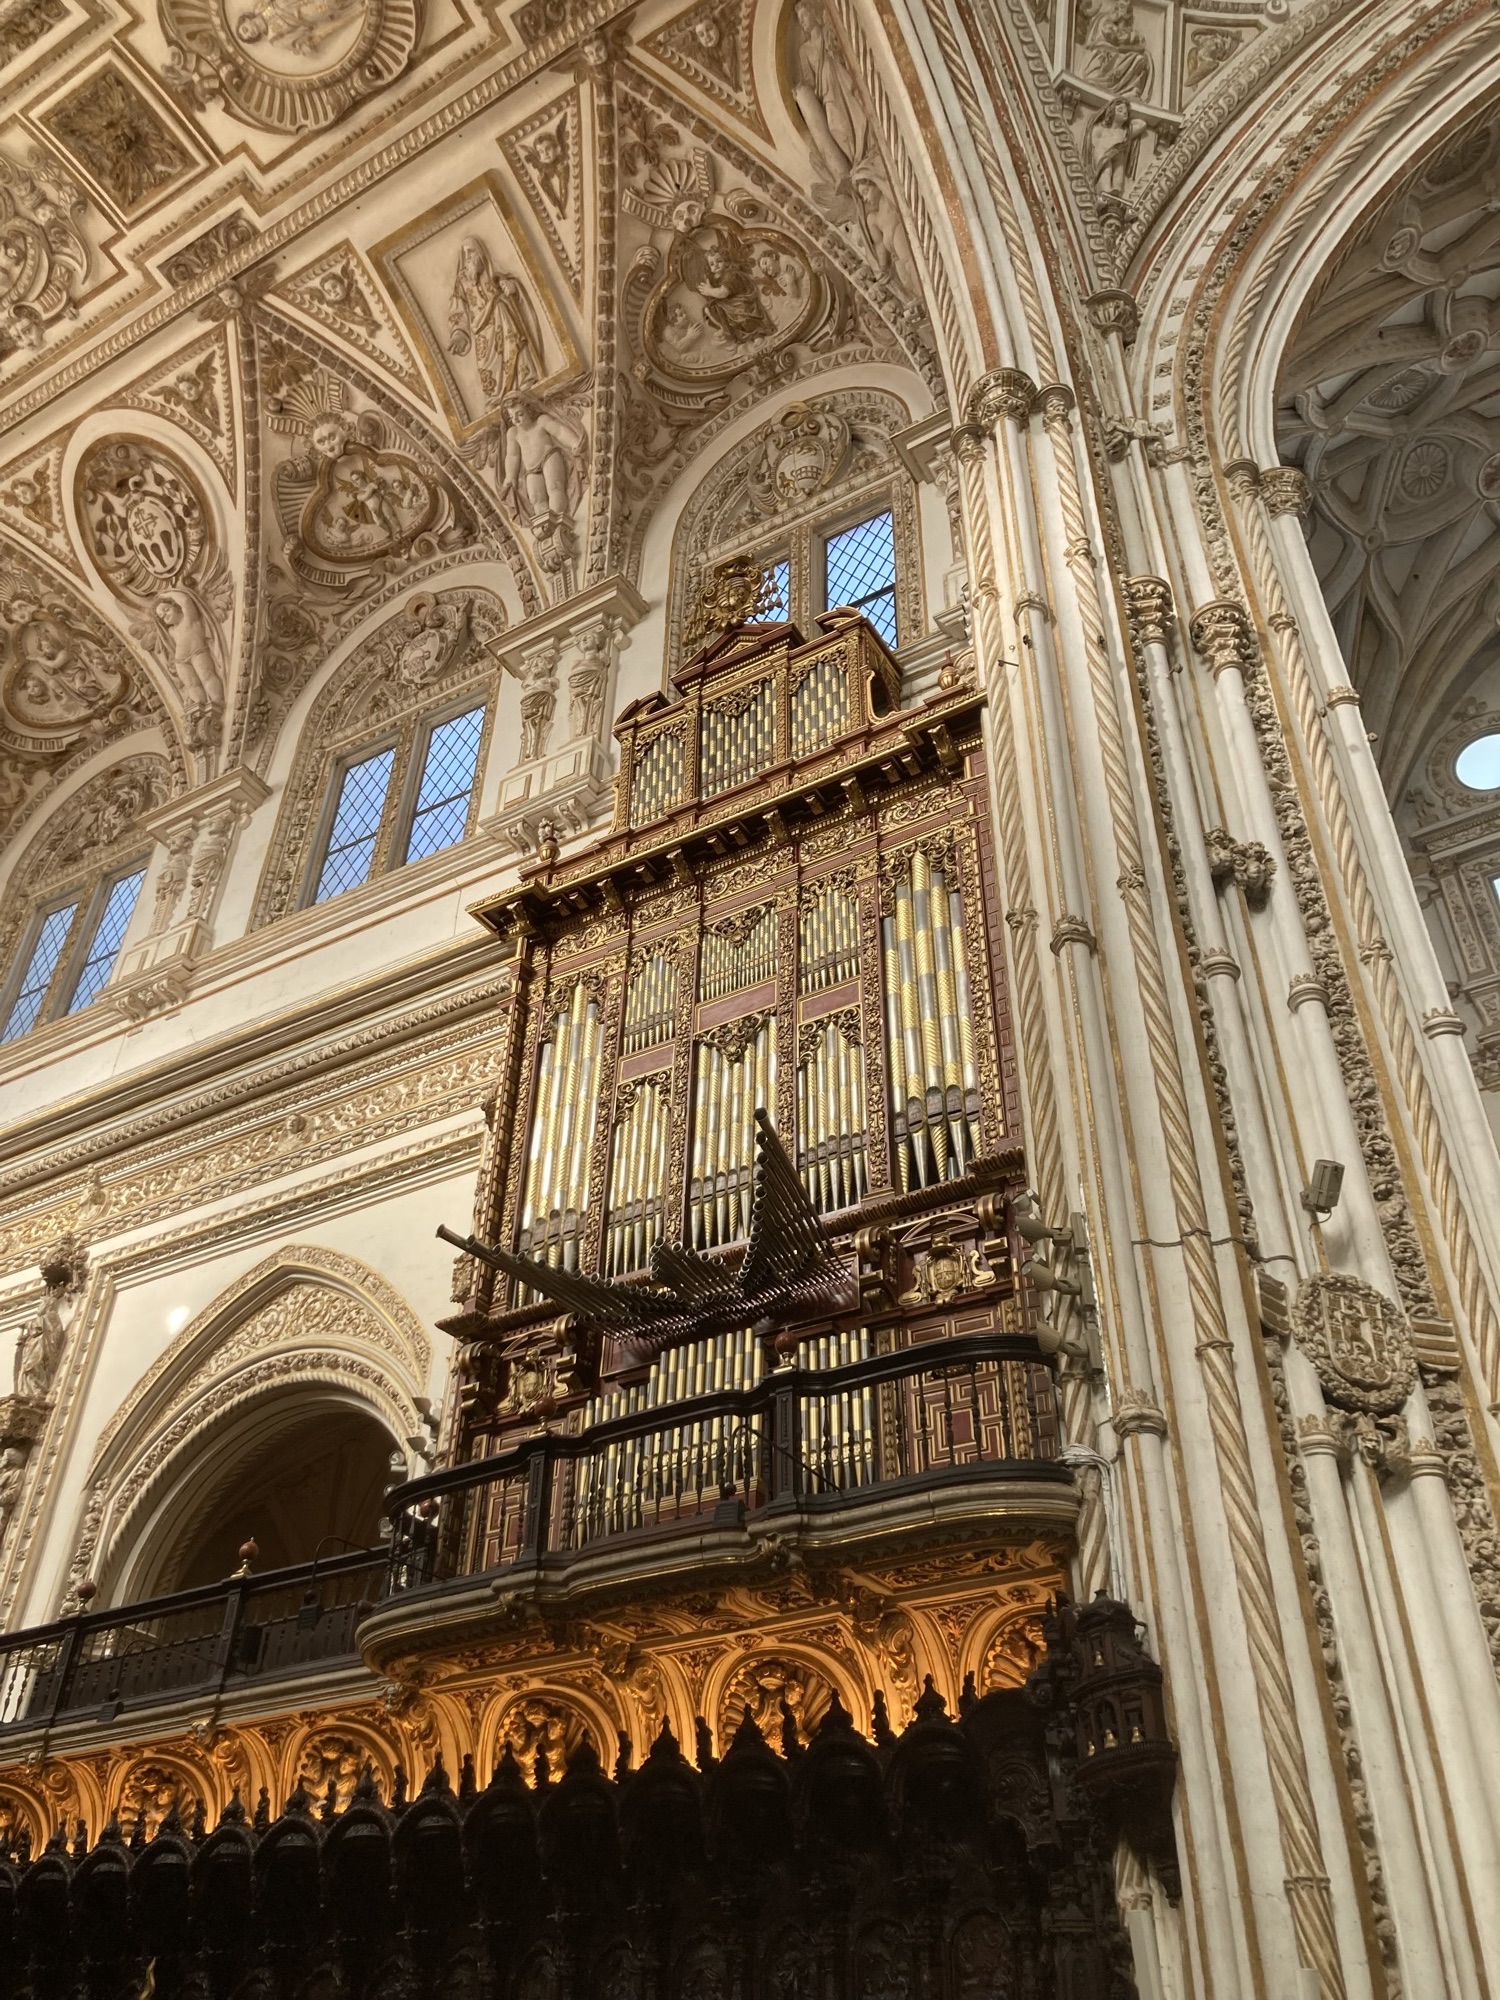 gewaltige Orgel im Kirchenschiff, darüber sind Teile der Deckenverzierungen zu sehen, darunter die Sitzbänke der Priester, aus dunklem Holz geschnitzt, mit hohen Lehnen